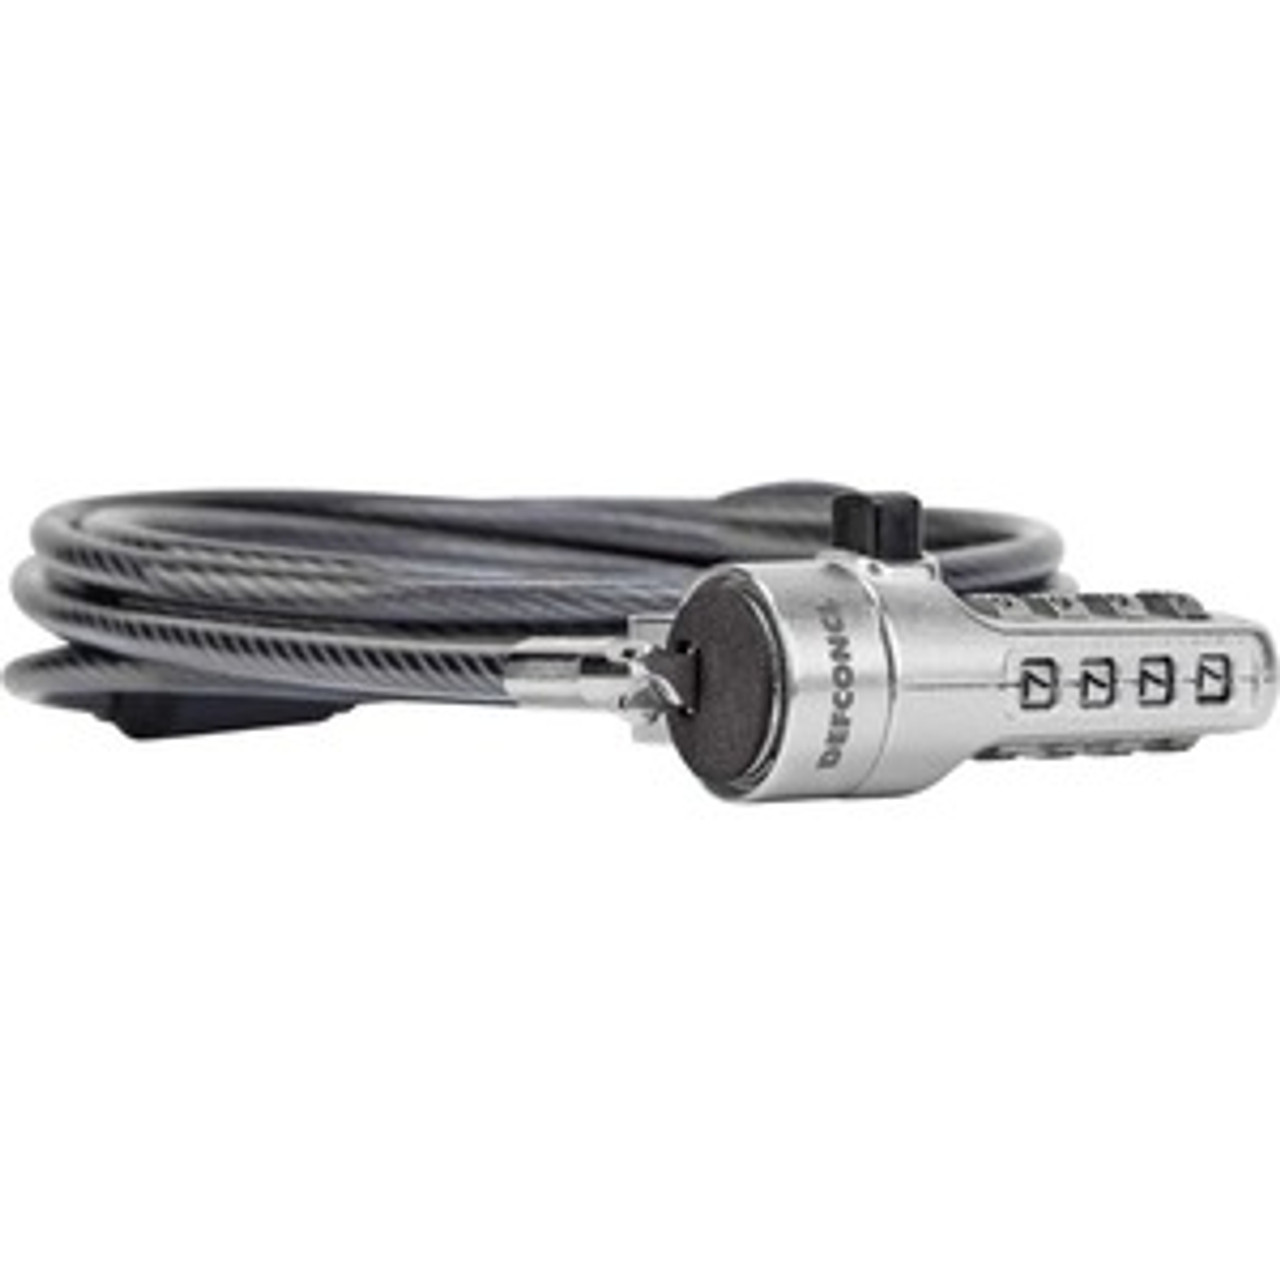 Targus DEFCON Mini Combo Cable Lock - ASP66GLX-S